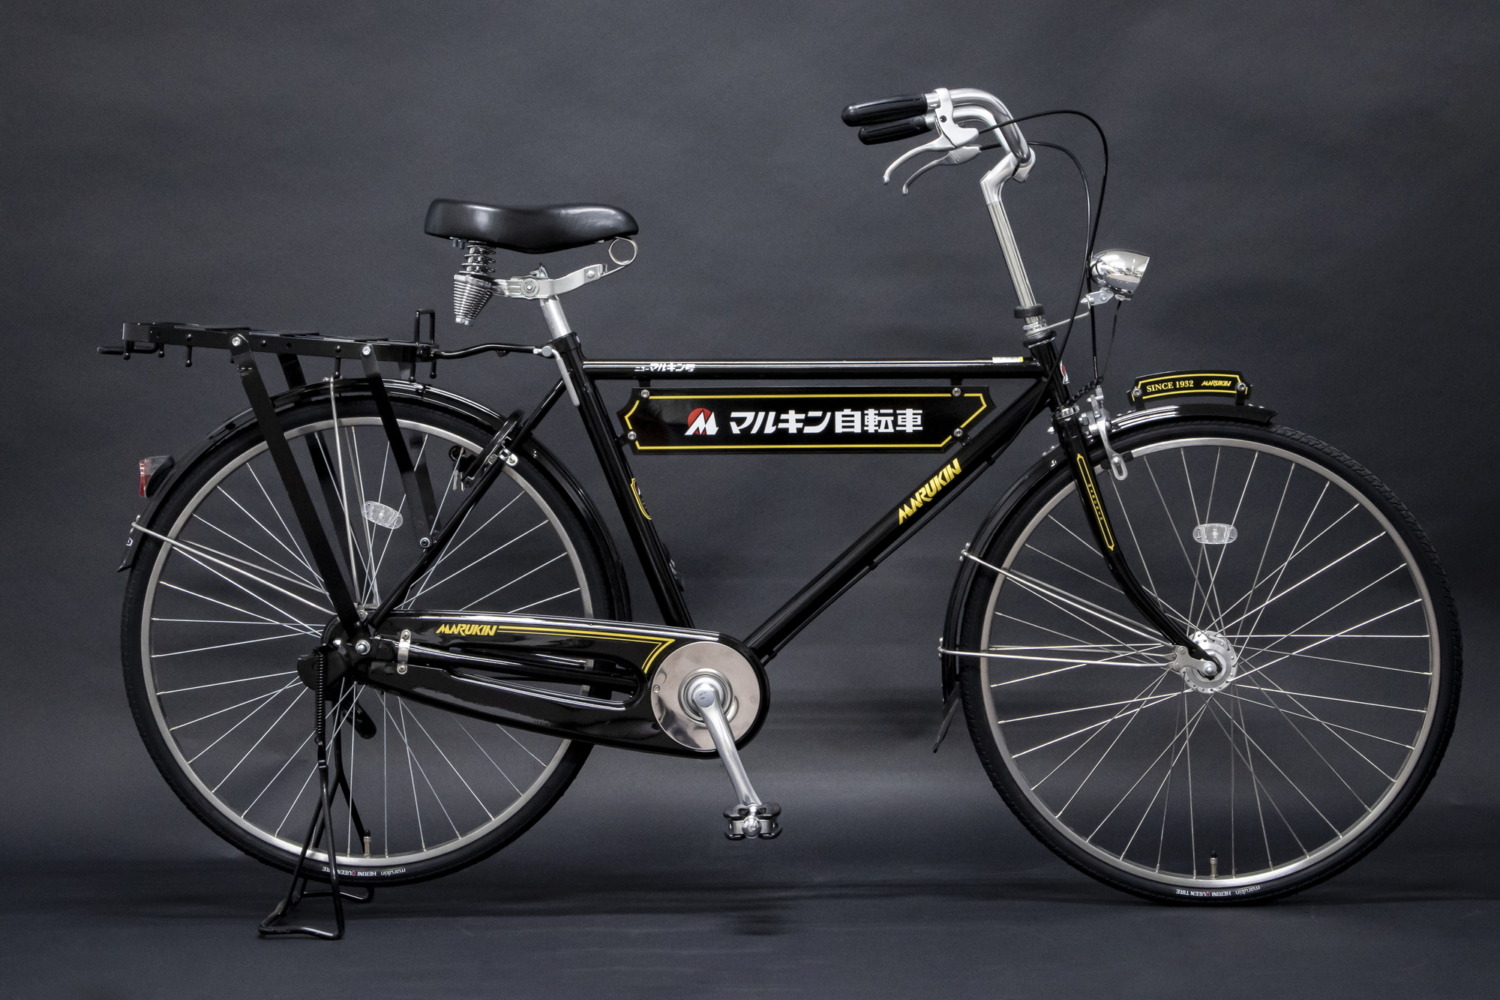 マルキン自転車90年の歴史を​象徴する自転車「ニューマルキン号 